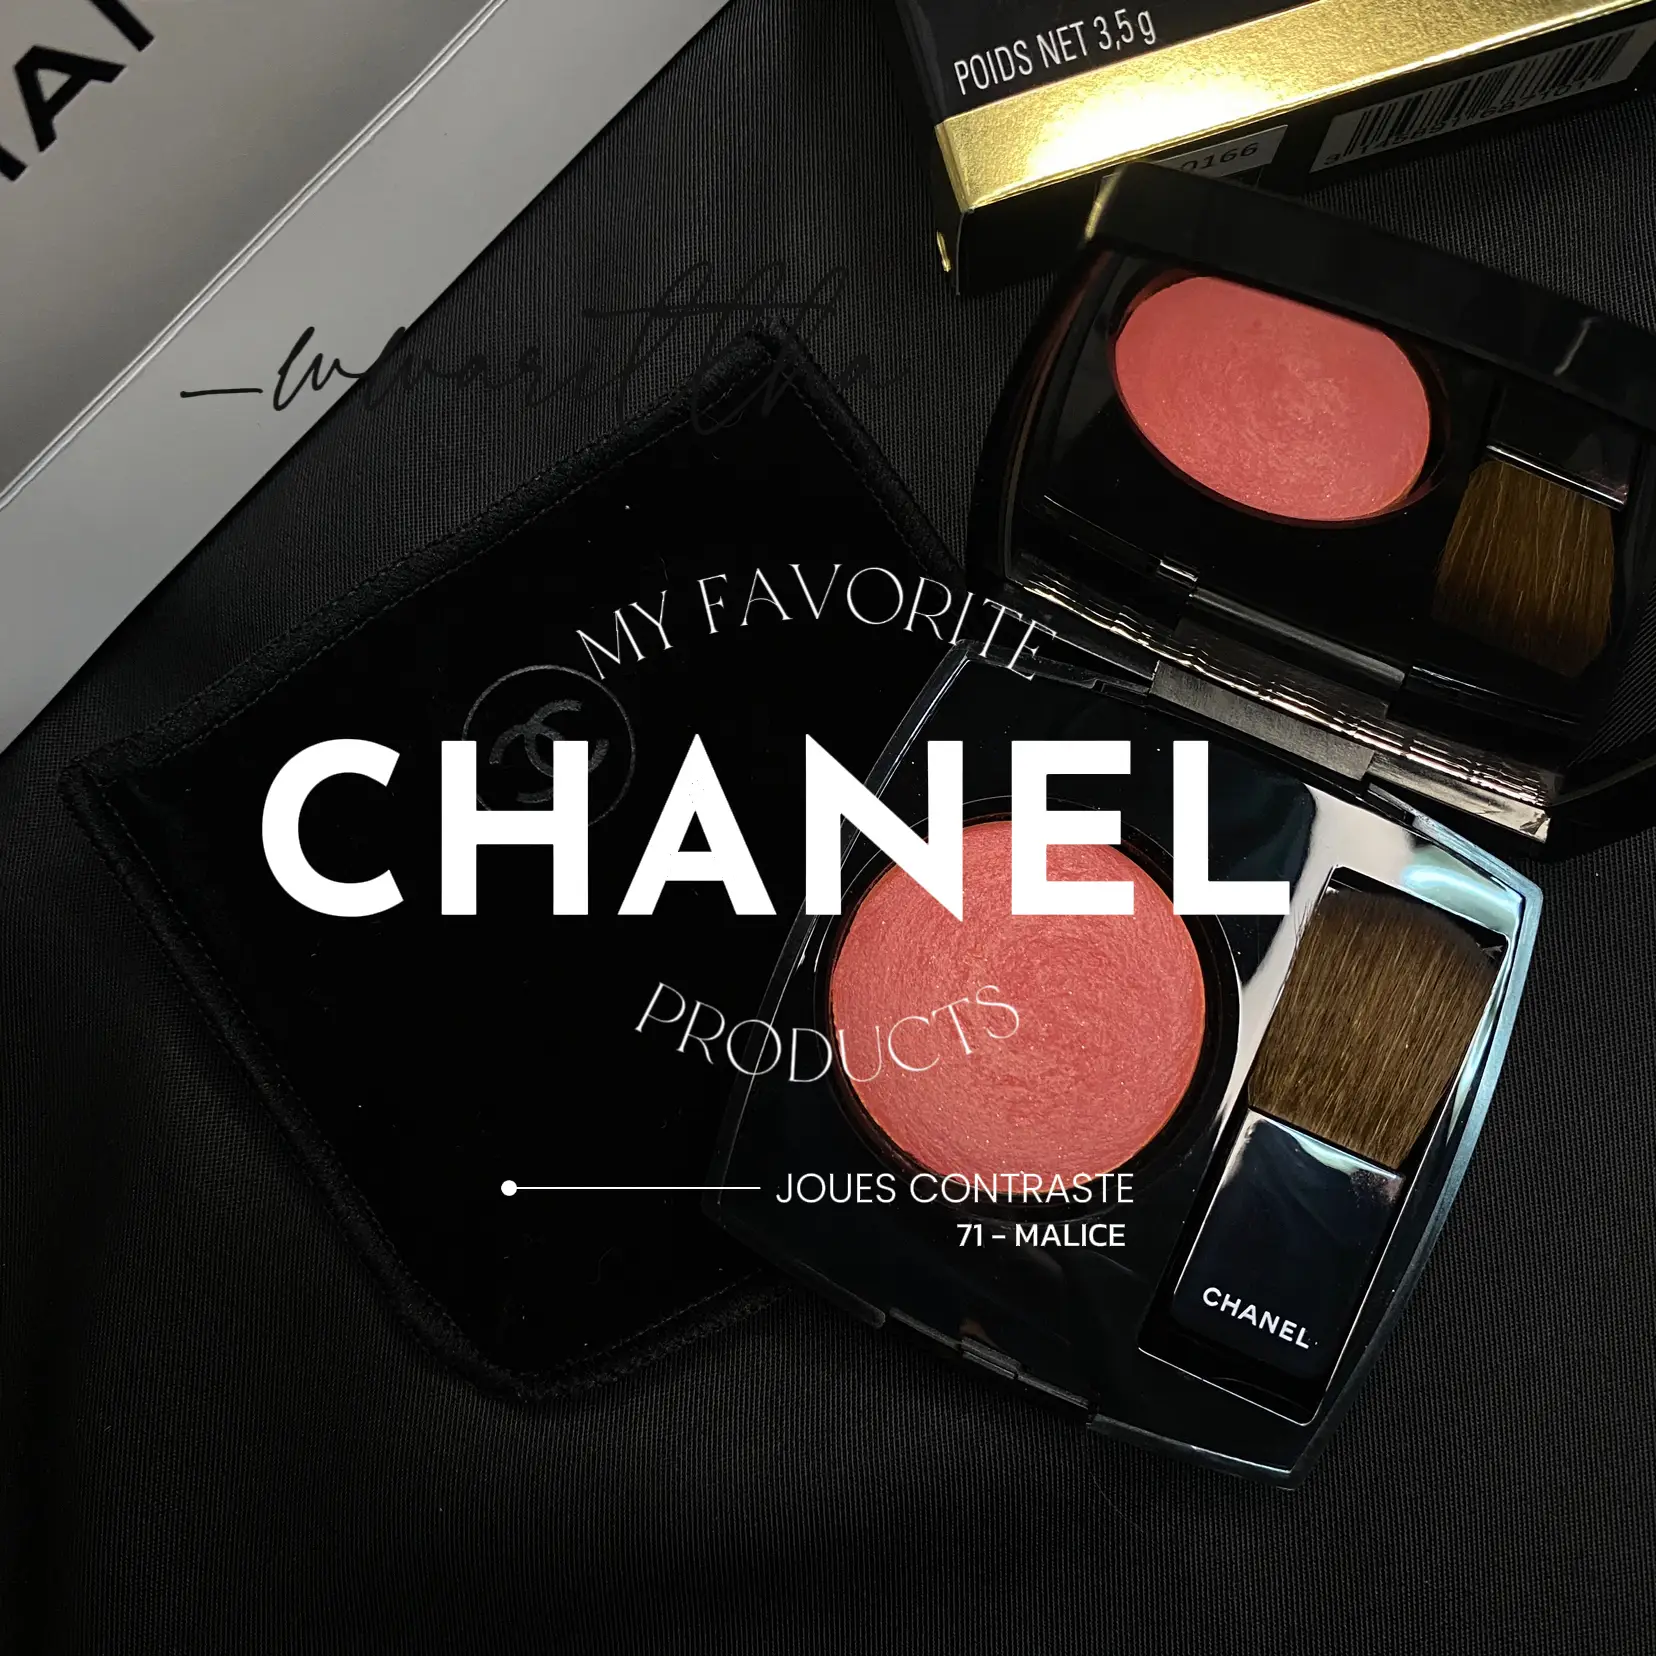 Chanel Joues Contraste Powder Blush #85 Evocation Comparisons